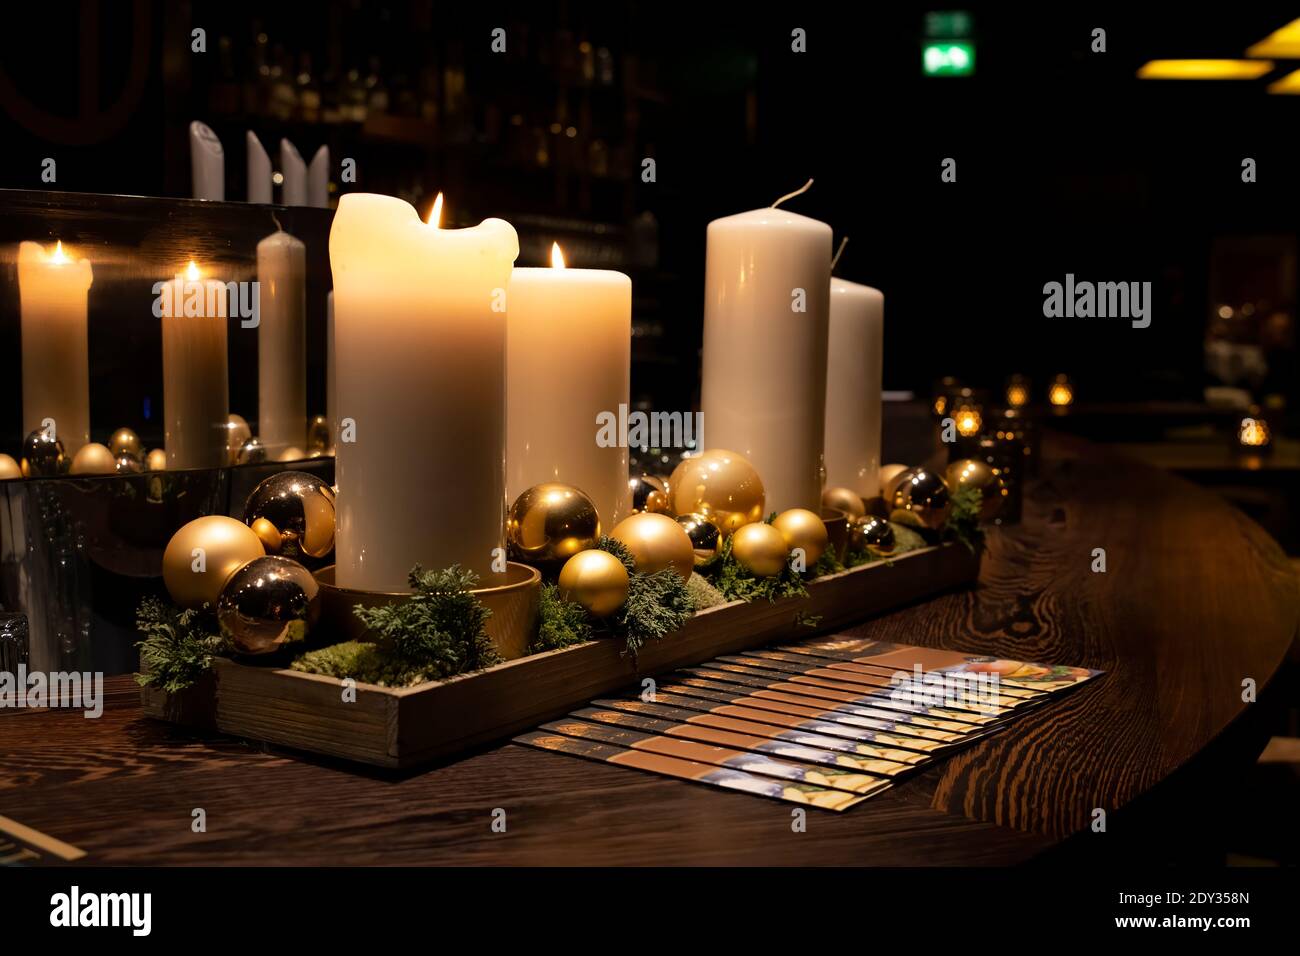 Beleuchtete Kerzen auf dem Tisch Stockfotografie - Alamy